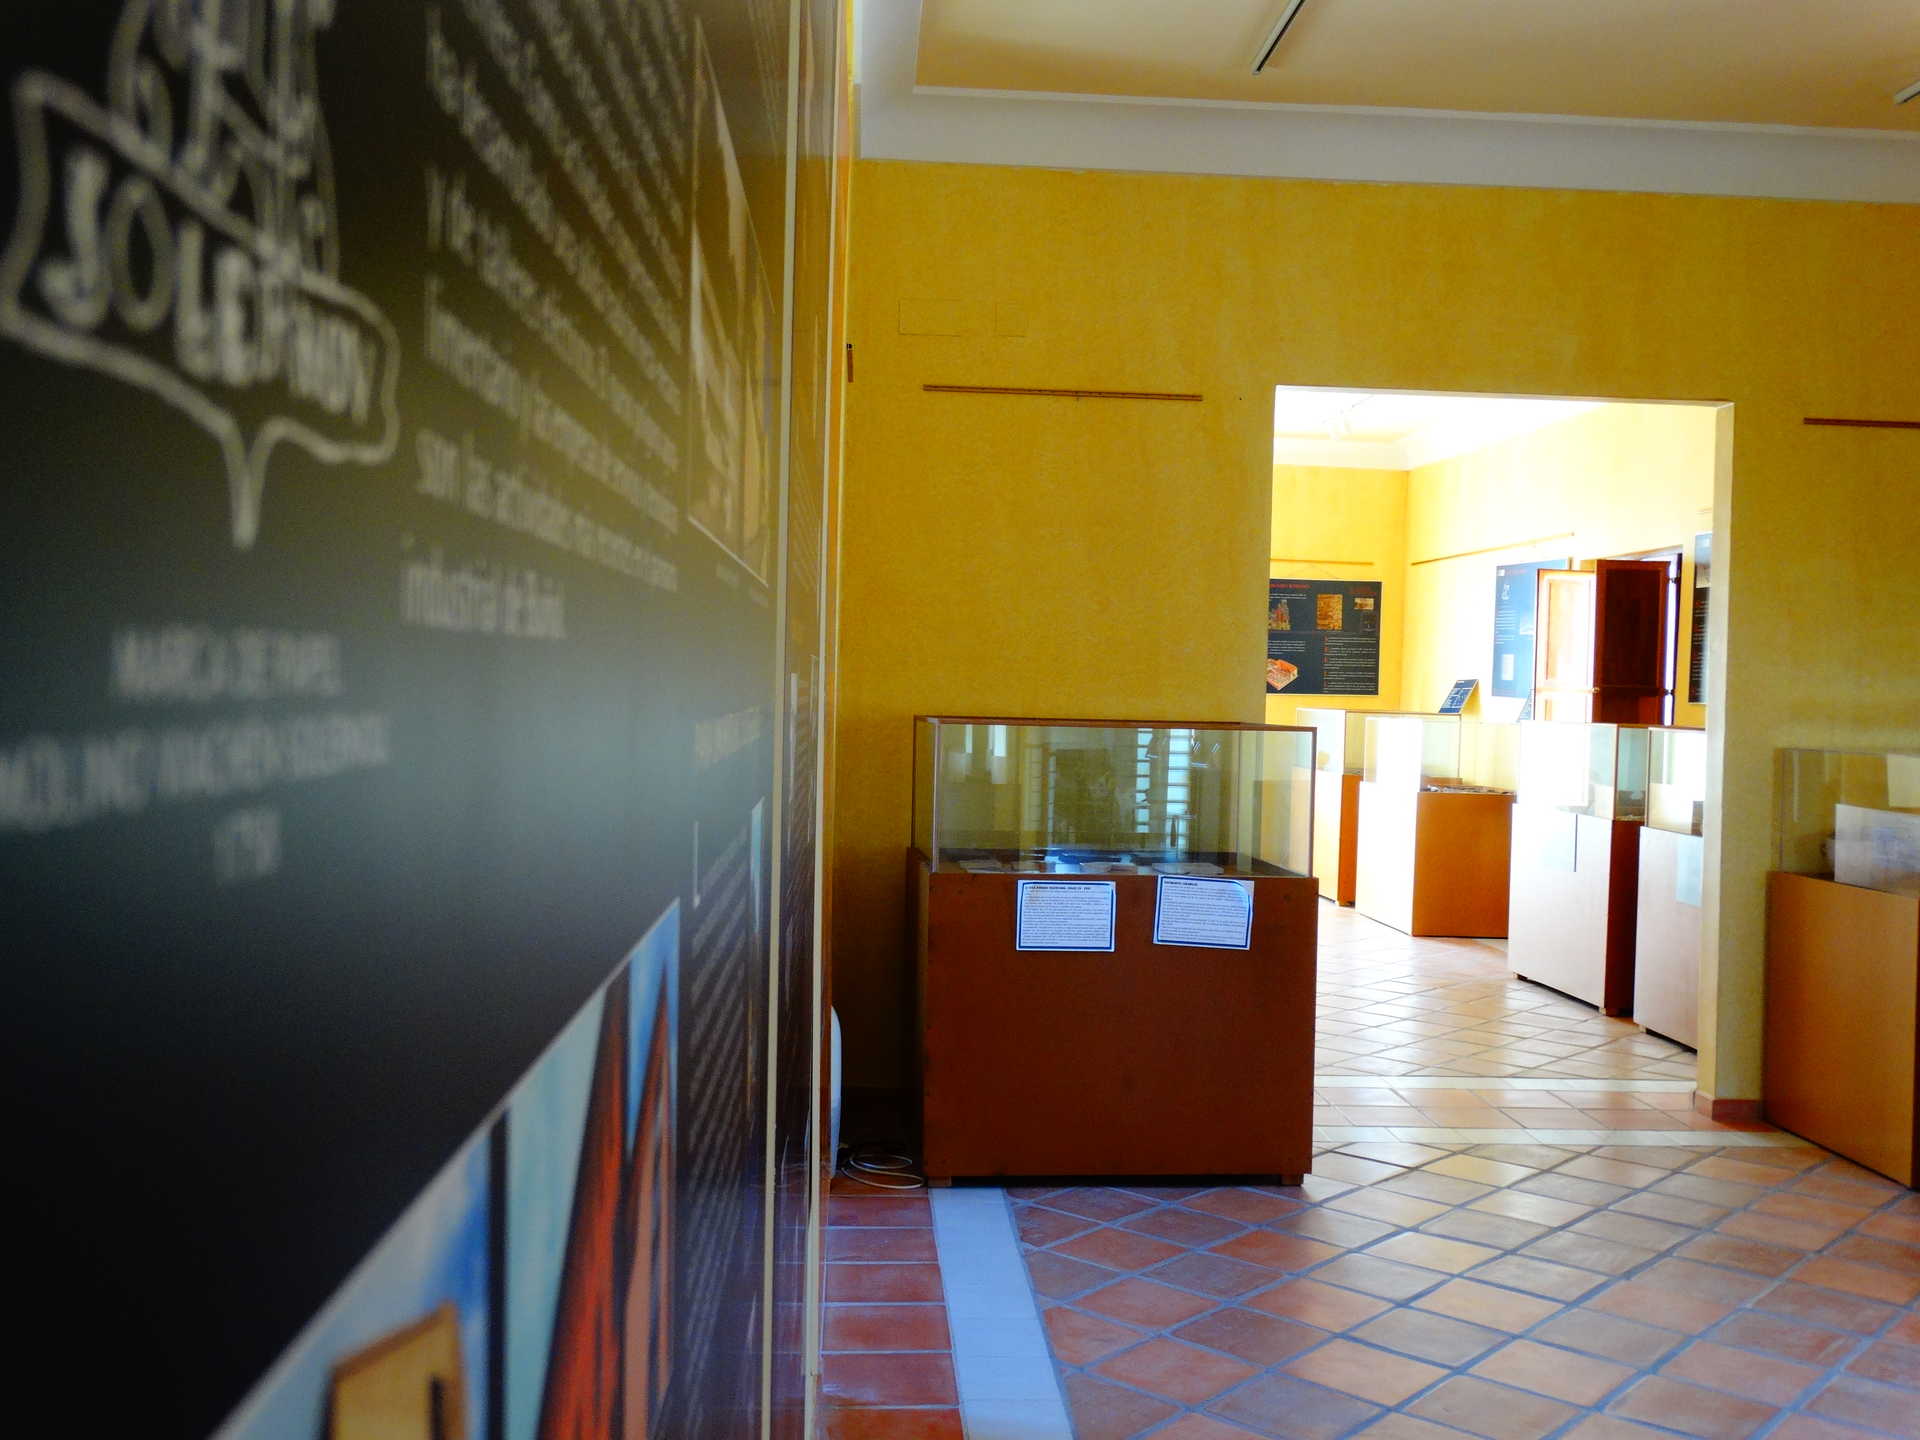 Colección museográfica de Buñol